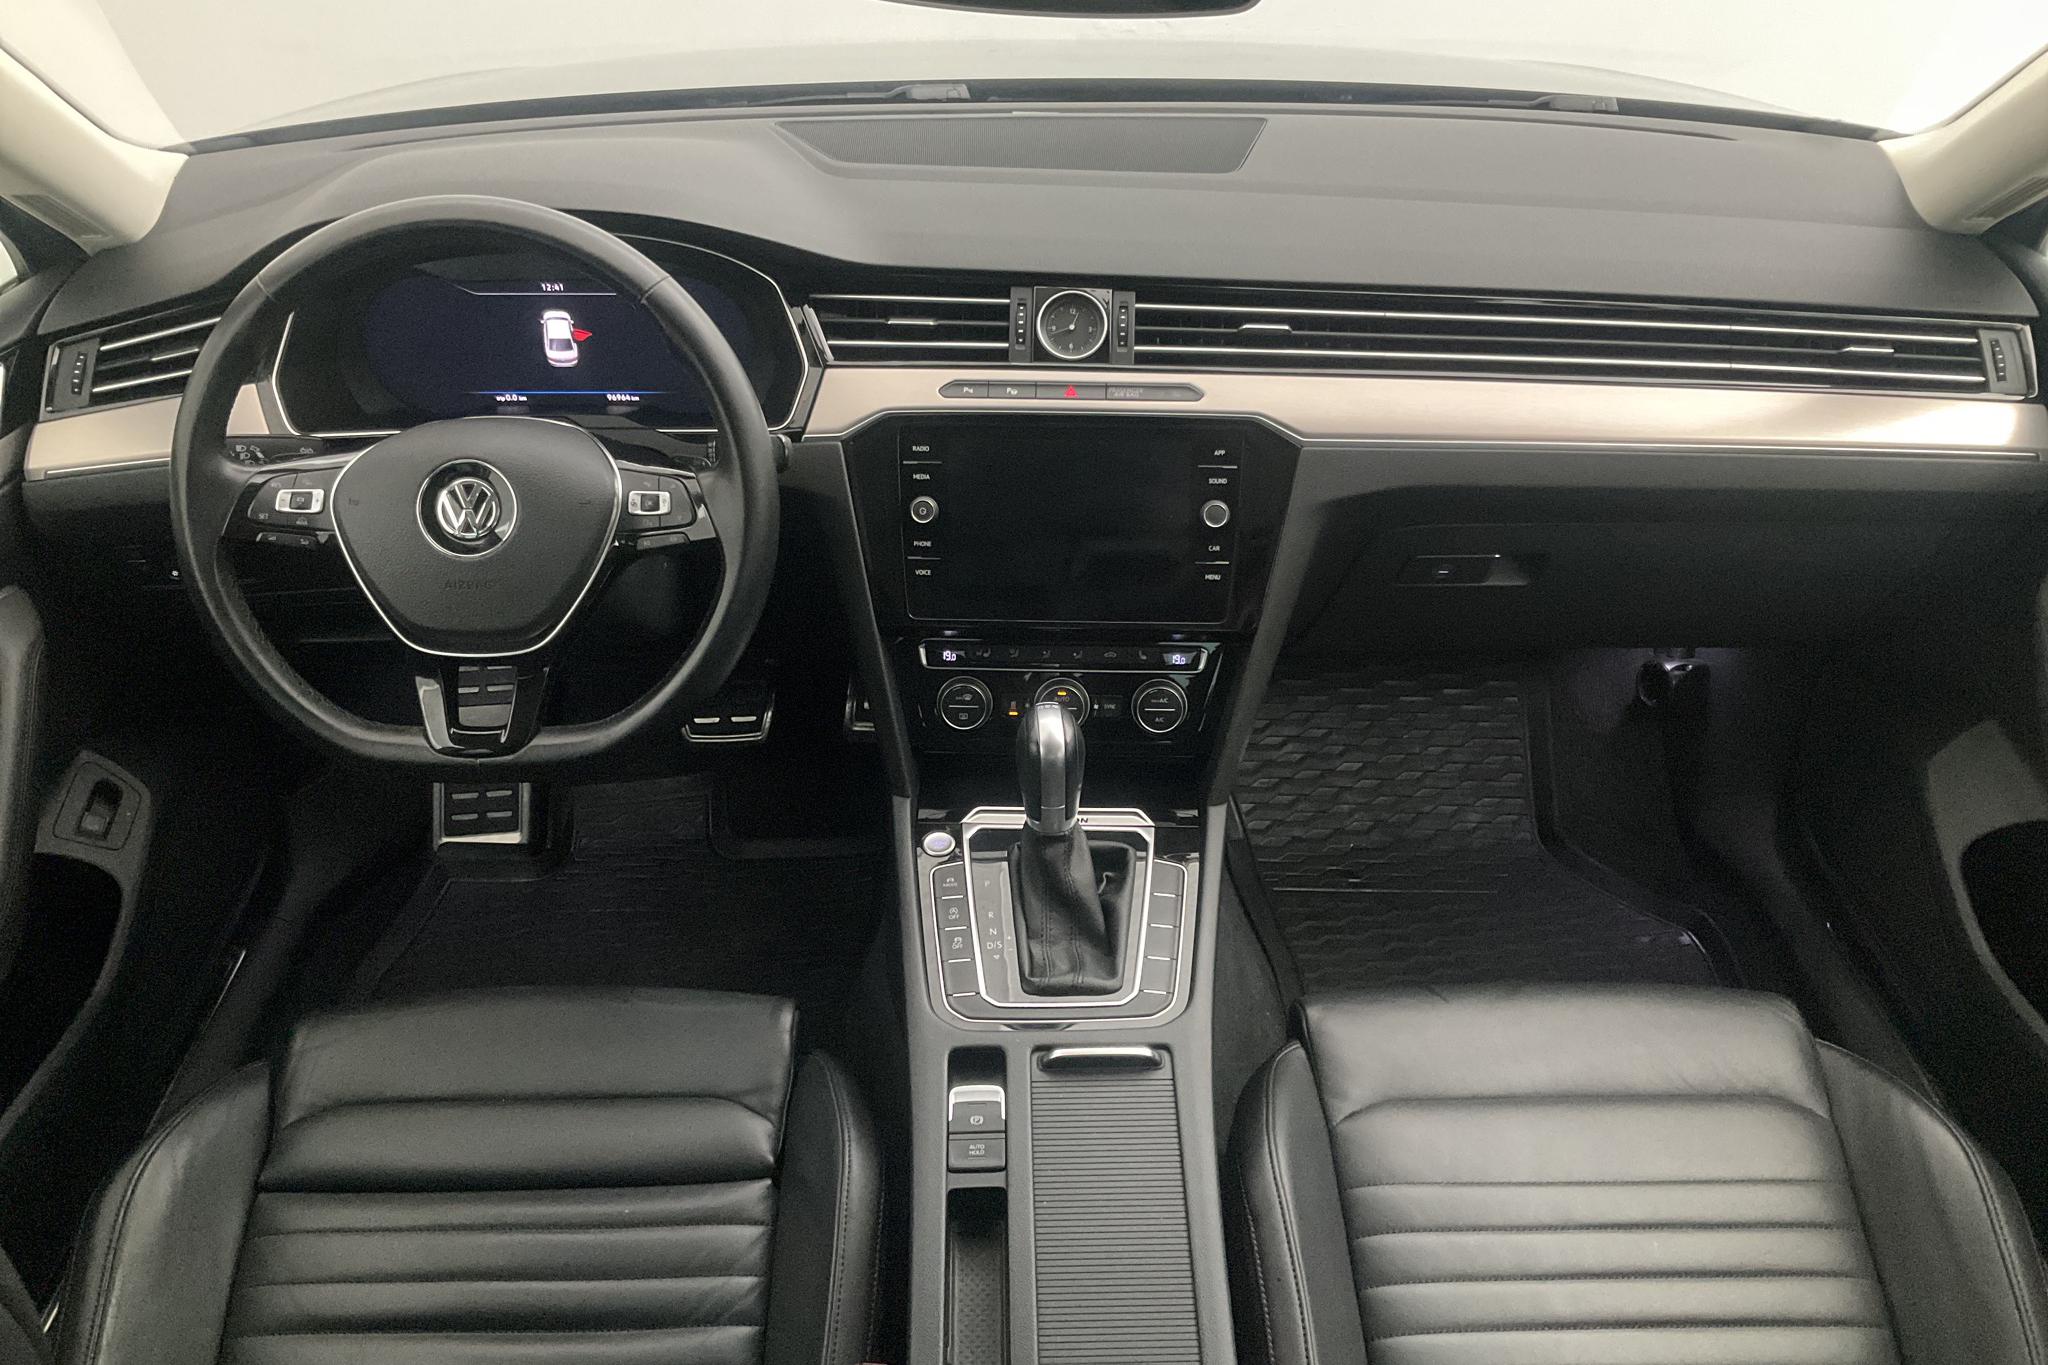 VW Passat 2.0 TDI BiTurbo 4MOTION (240hk) - 9 697 mil - Automat - silver - 2015